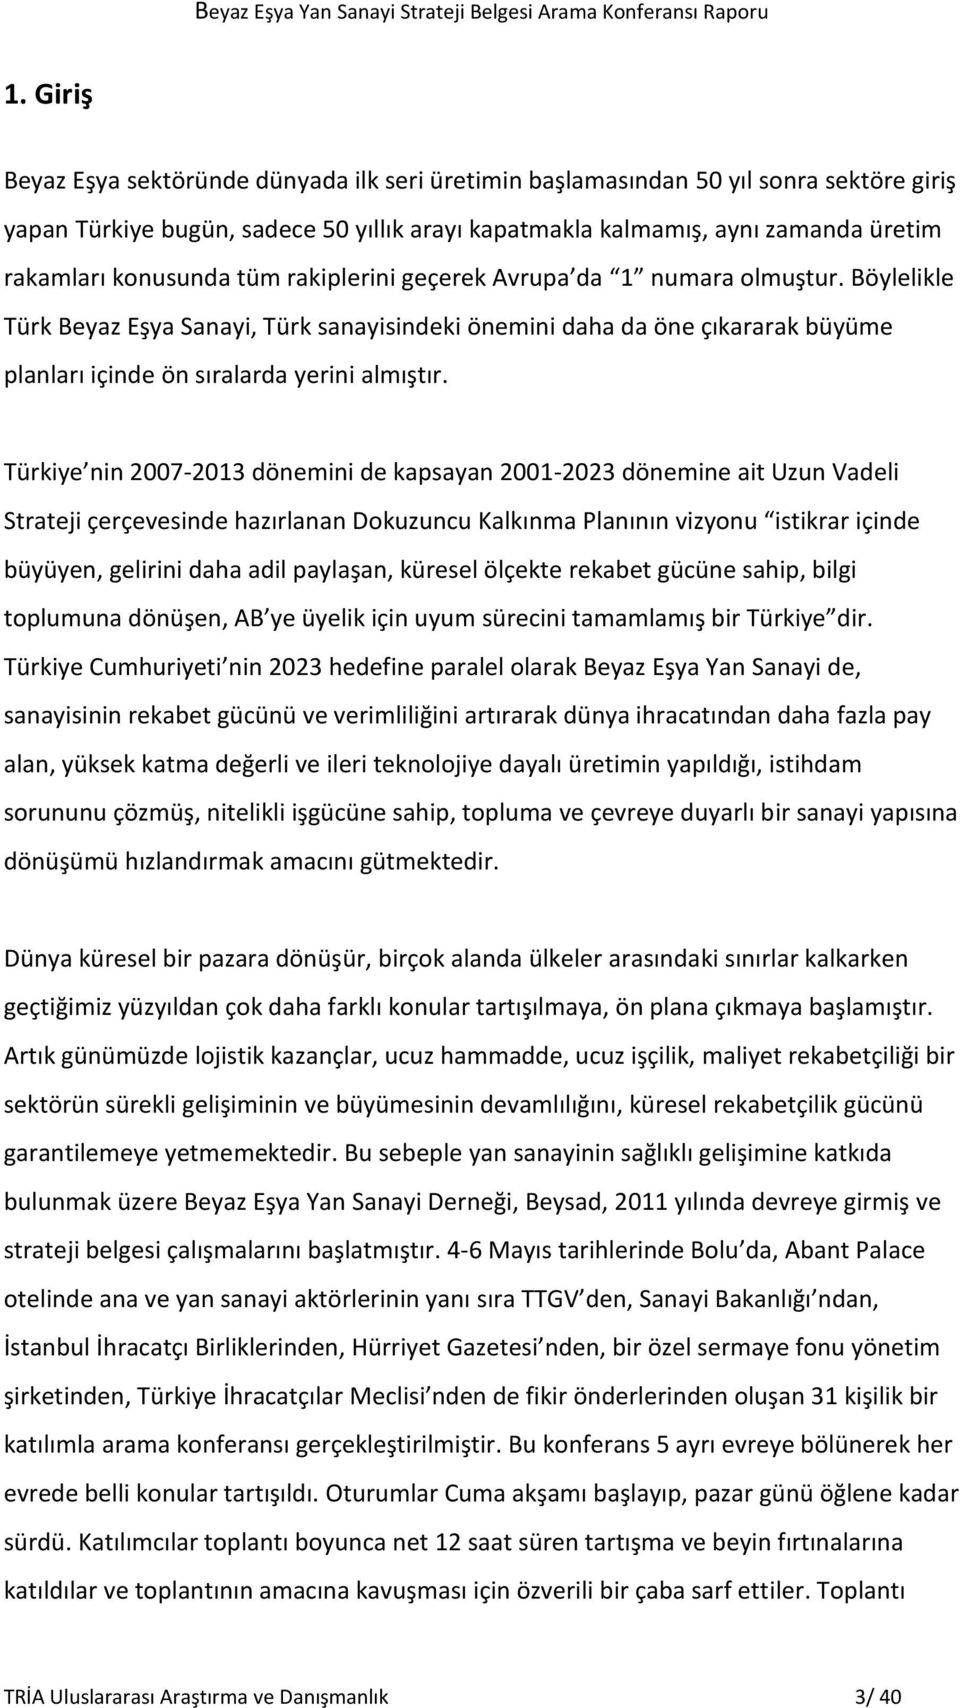 Türkiye nin 2007-2013 dönemini de kapsayan 2001-2023 dönemine ait Uzun Vadeli Strateji çerçevesinde hazırlanan Dokuzuncu Kalkınma Planının vizyonu istikrar içinde büyüyen, gelirini daha adil